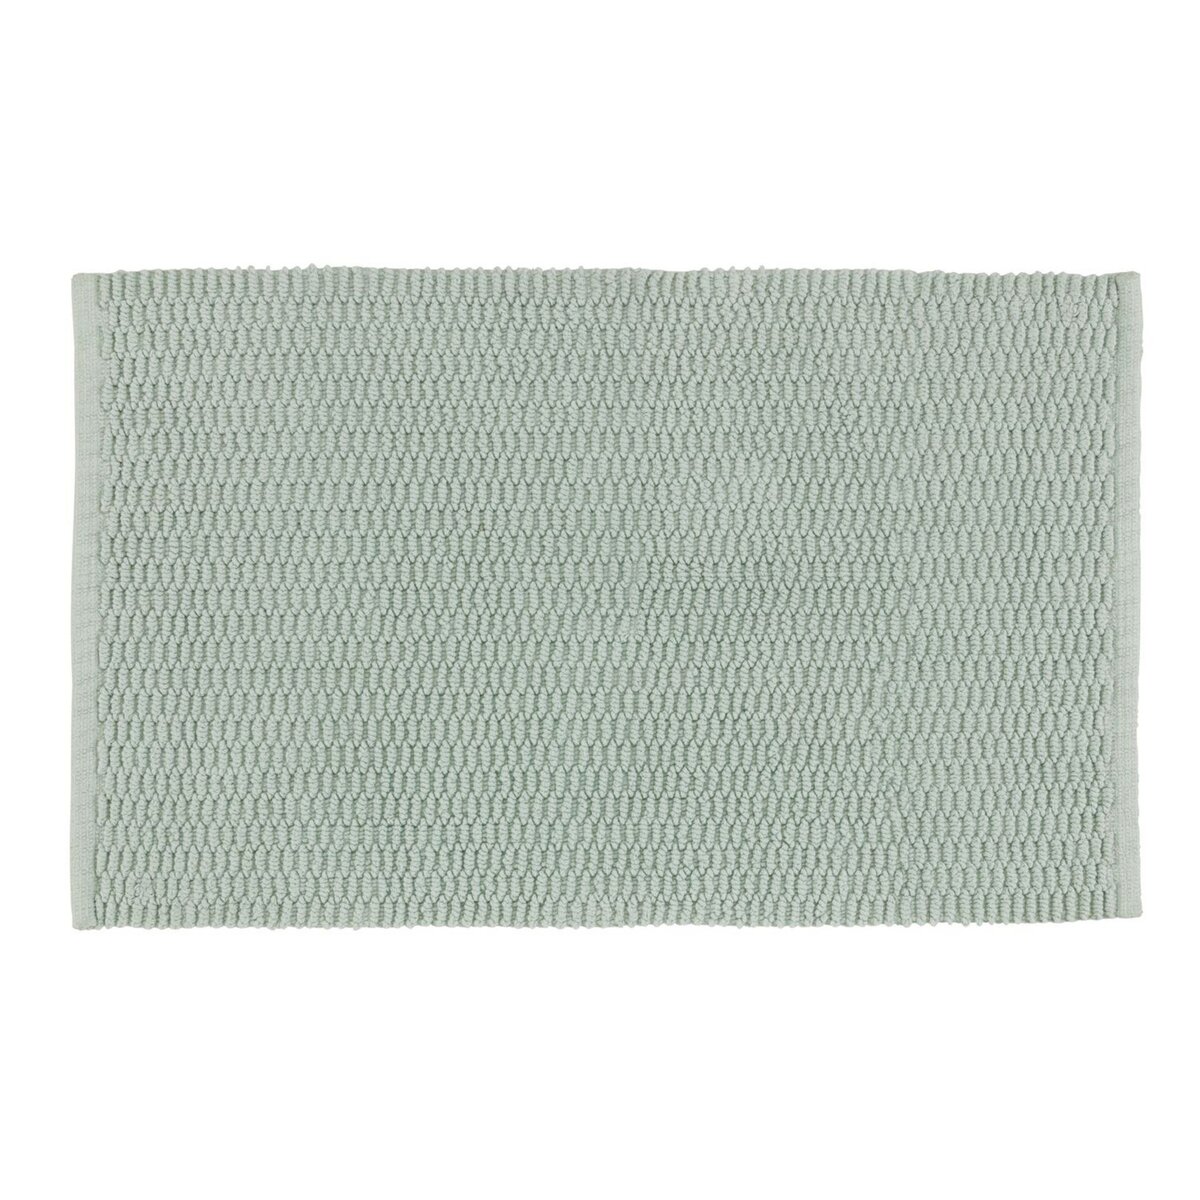 Wenko Tapis de salle de bain en coton Mona - L. 50 x l. 80 cm - Vert clair